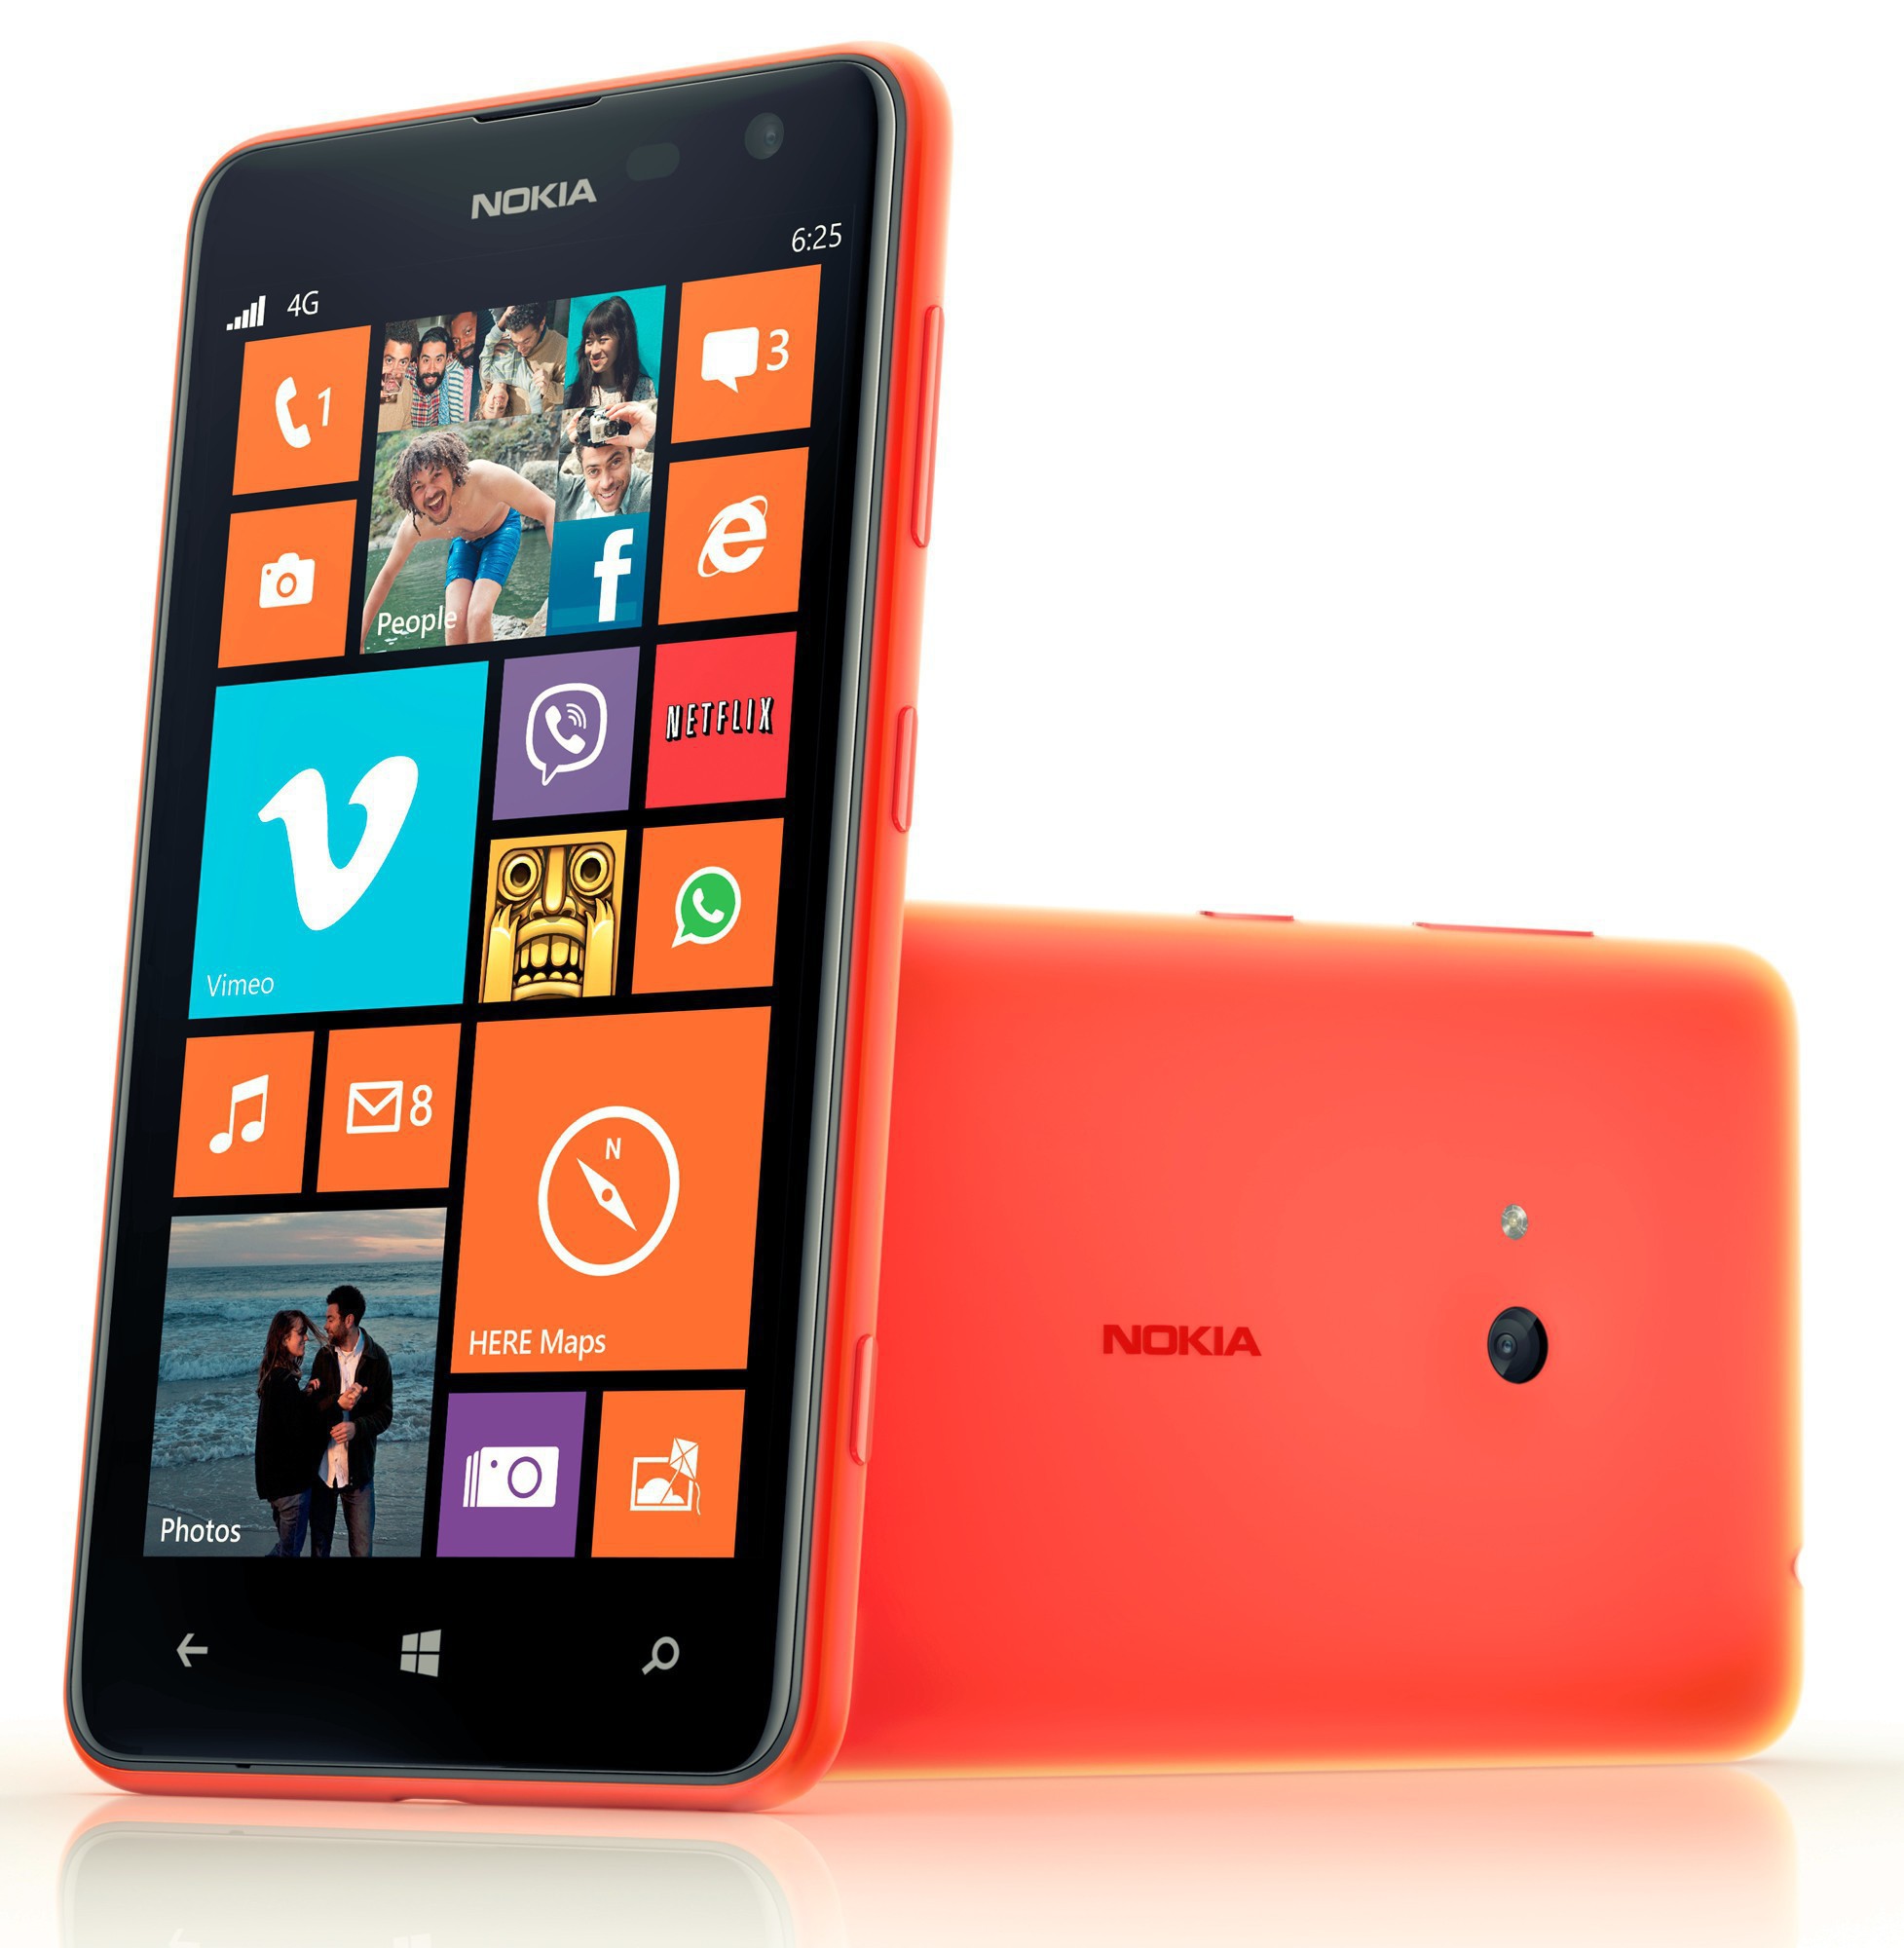 Nokia Lumia 625 Najwieksza Nokia W Historii Wideo